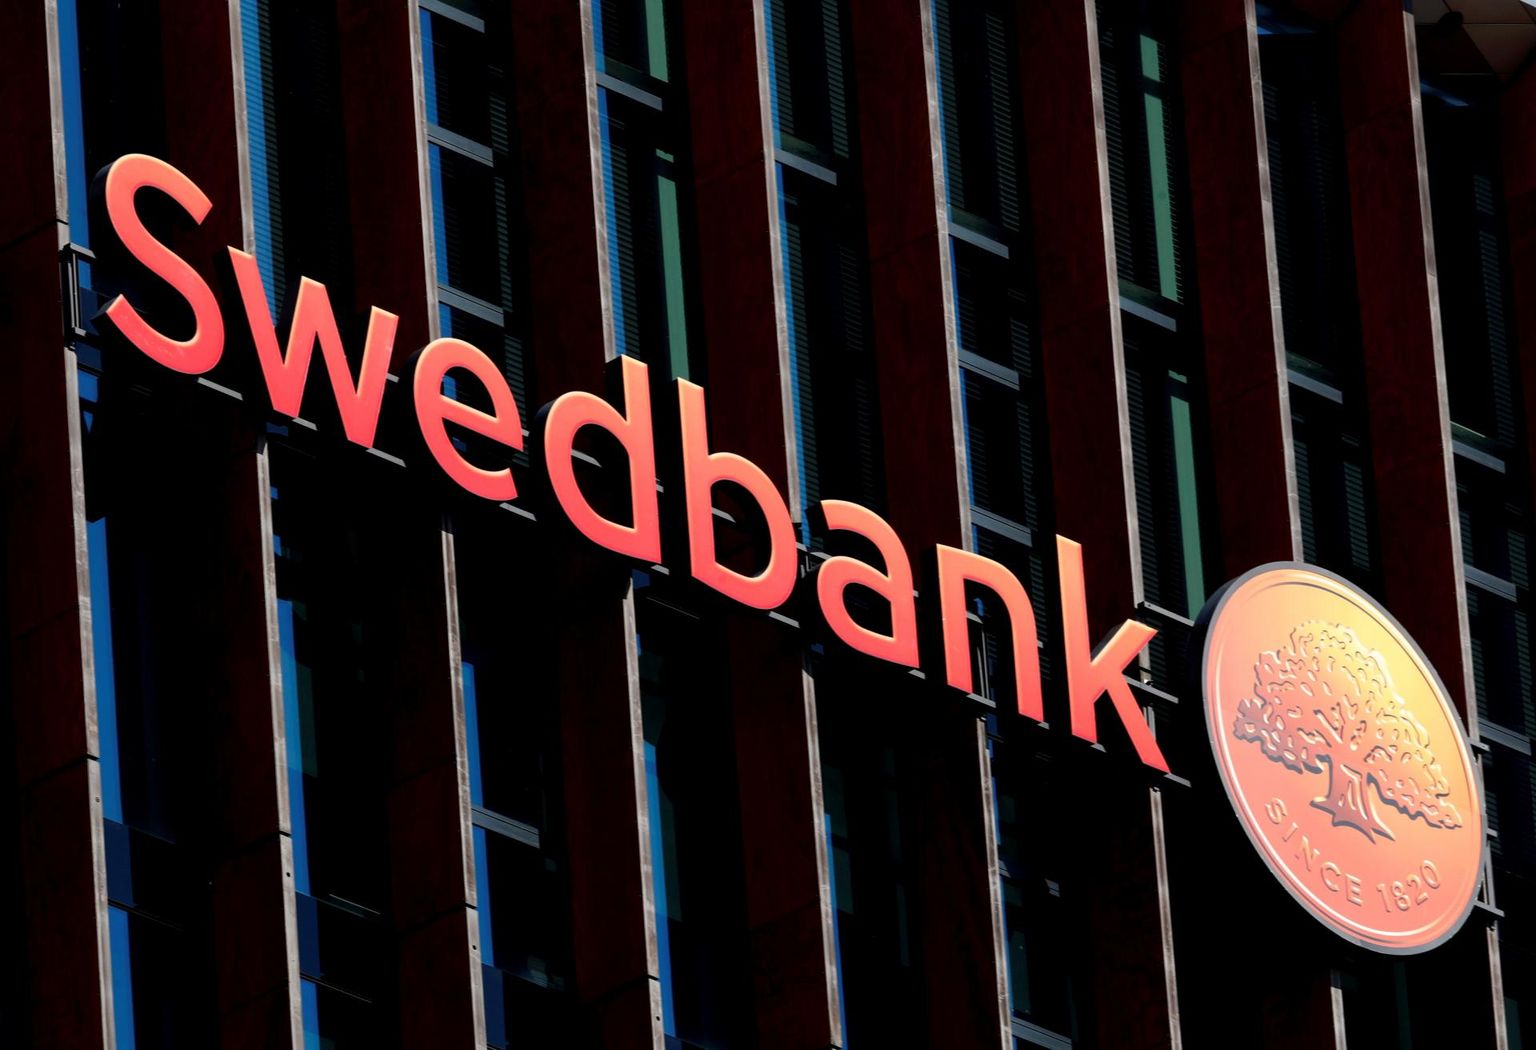 Rootsi finantsinspektsioon algatas Swedbank AB suhtes uurimise seoses võimaliku turureeglite rikkumisega.